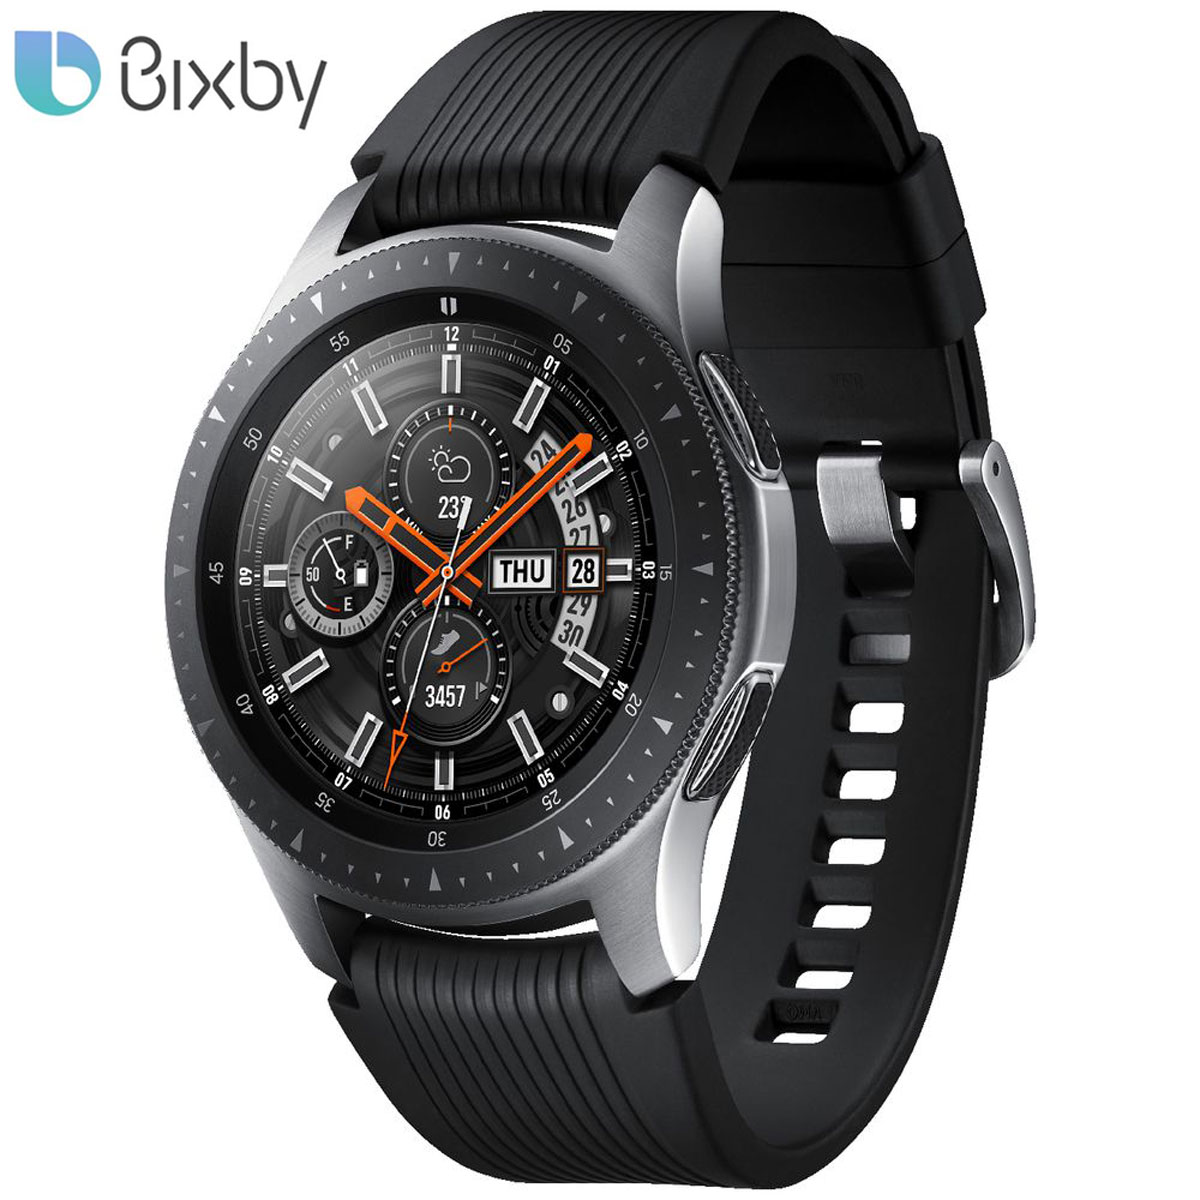 Bixby en español llega al Samsung Watch